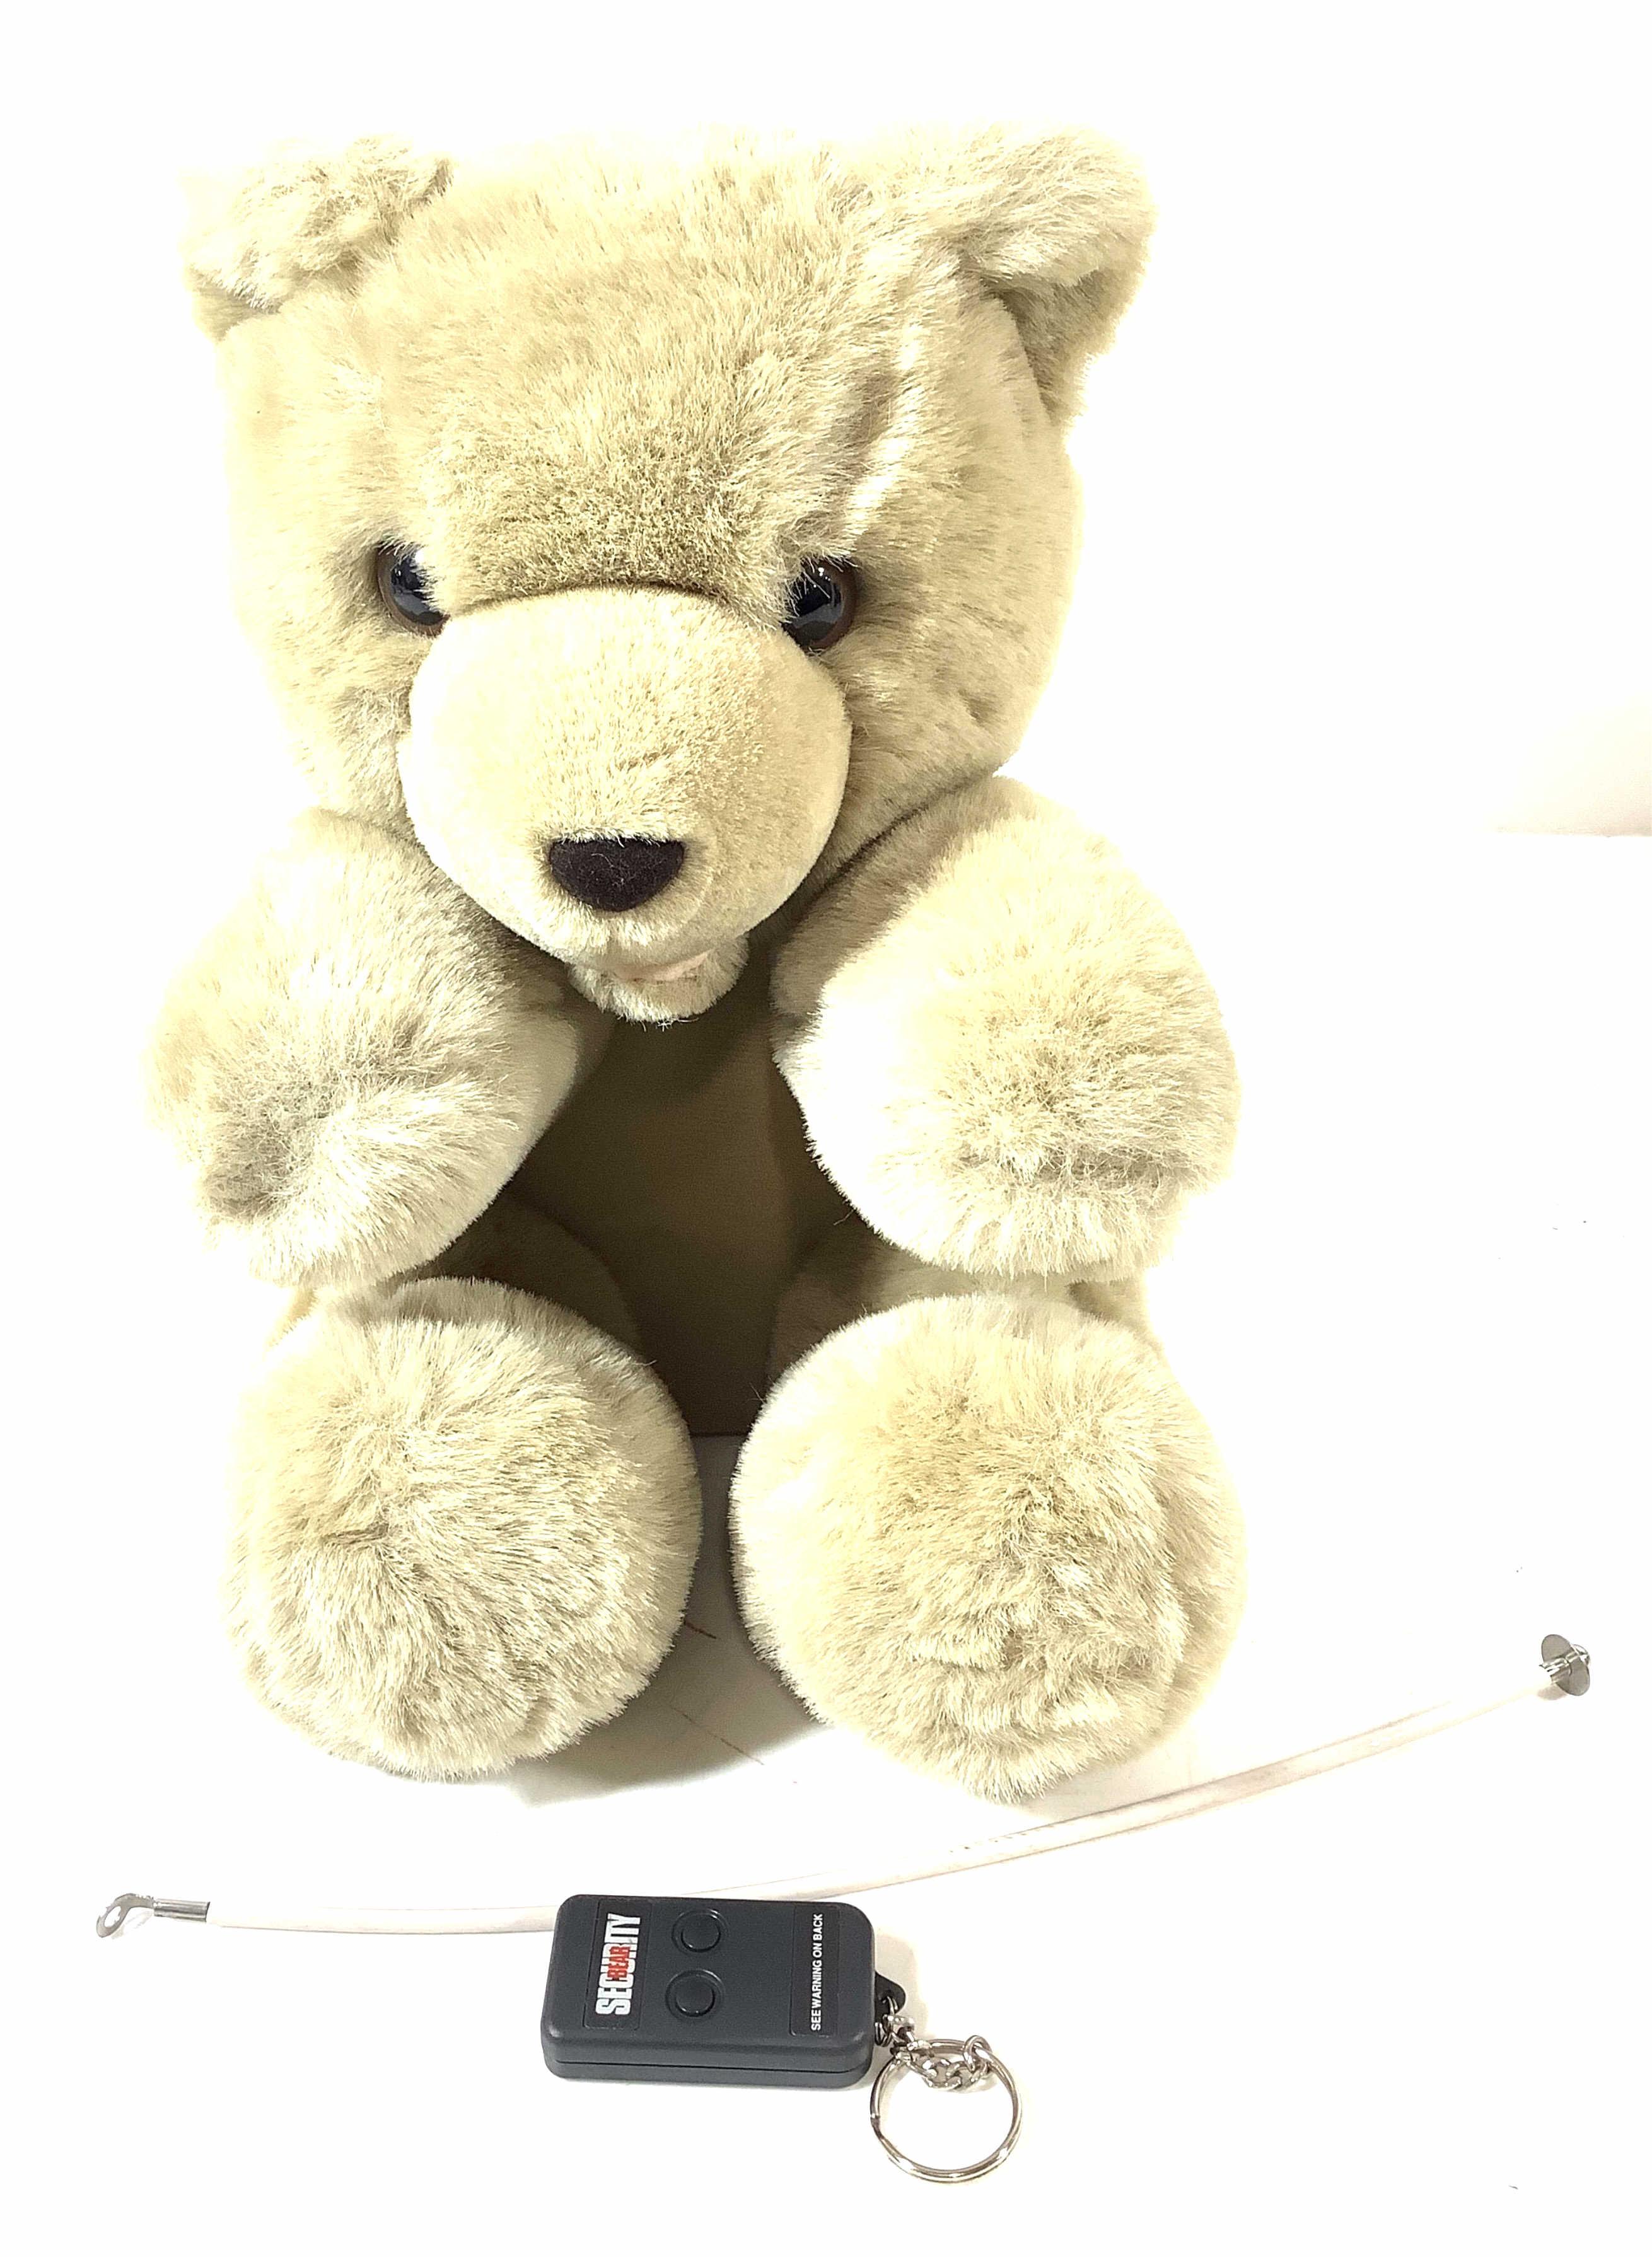 Vintage Security Teddy Bear, Car Alarm